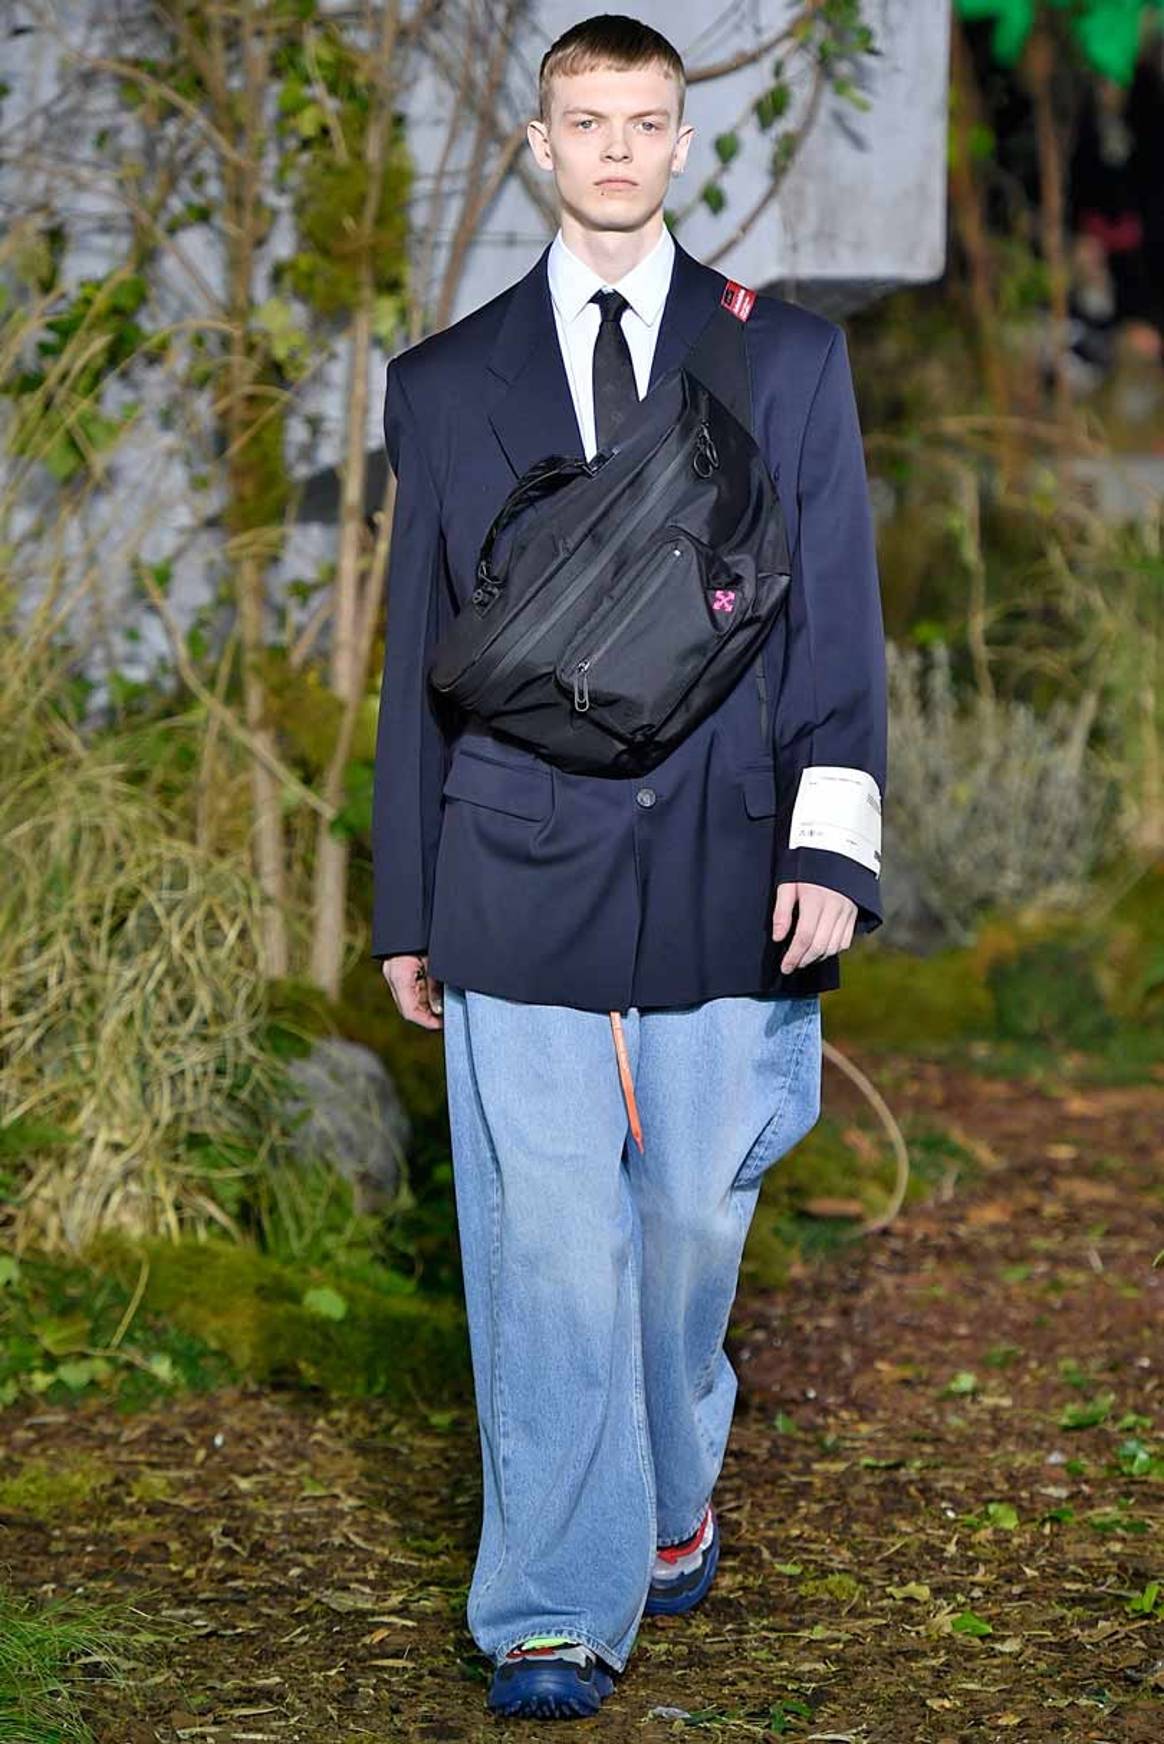 Virgil Abloh zigzague entre streetwear et classique, en attendant Vuitton